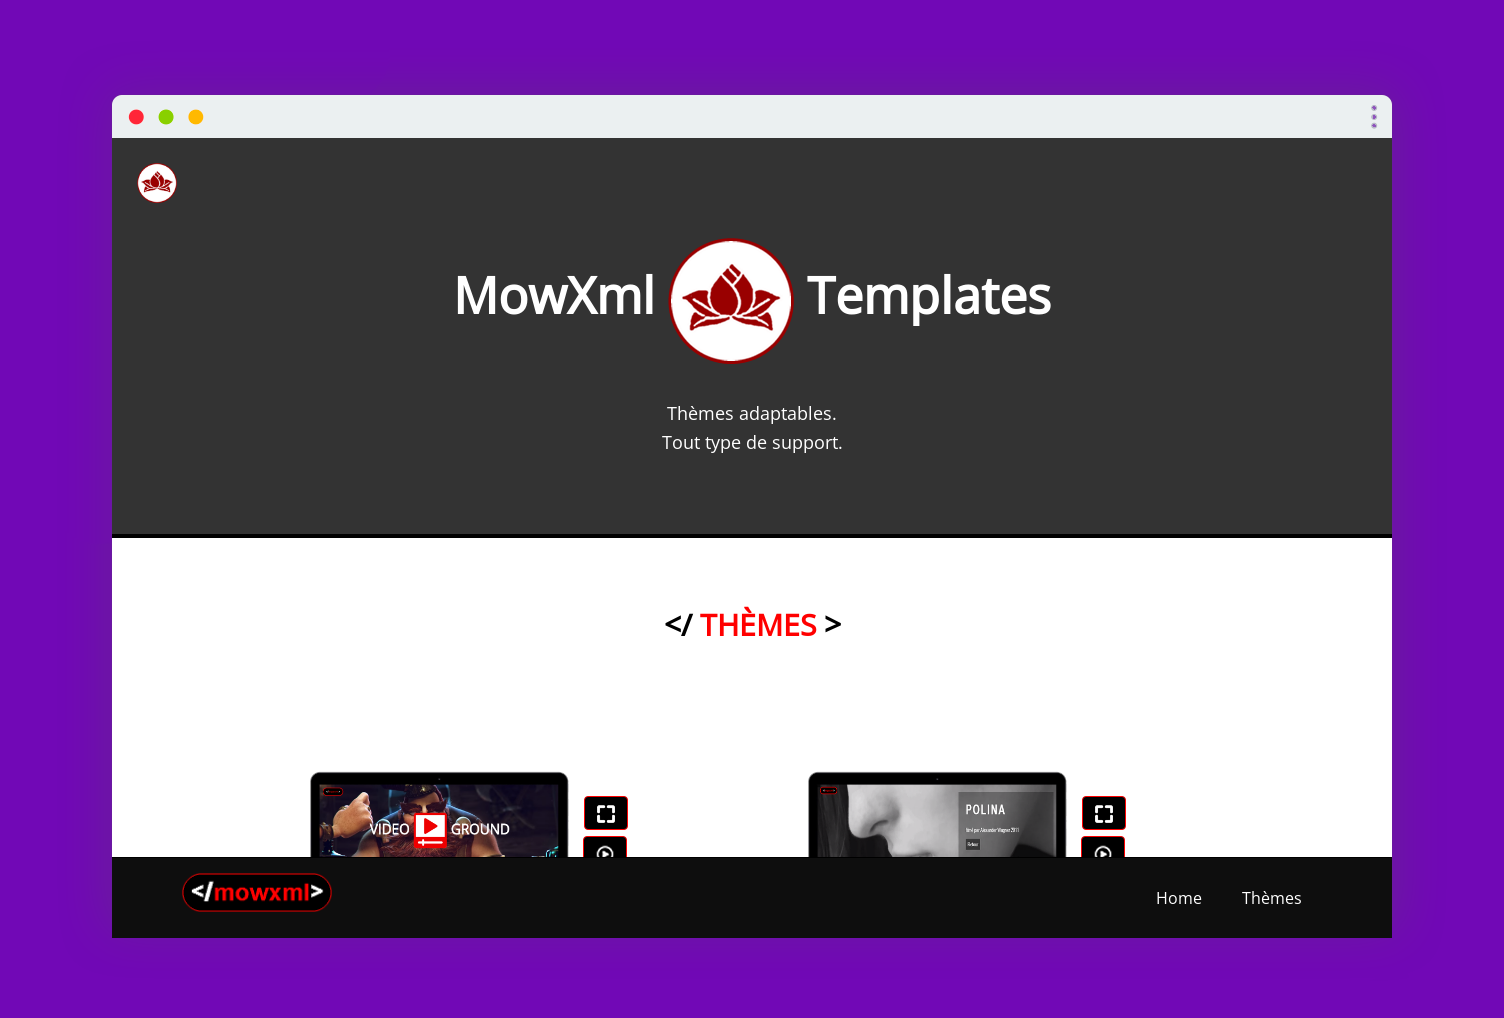 screenshot mowxml videos backgrounds templates